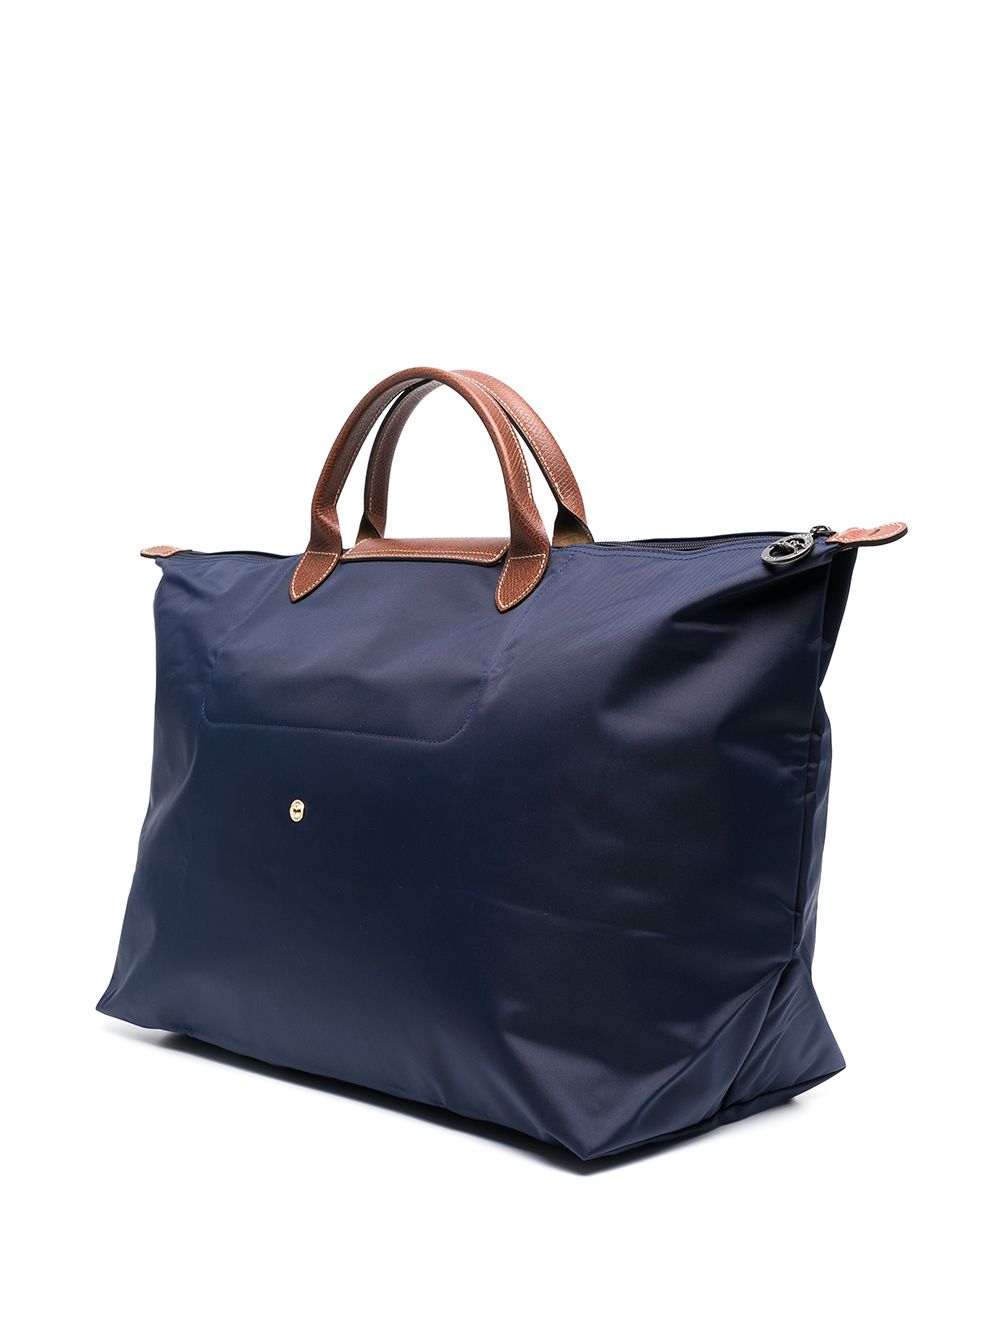 фото Longchamp большая сумка le pliage